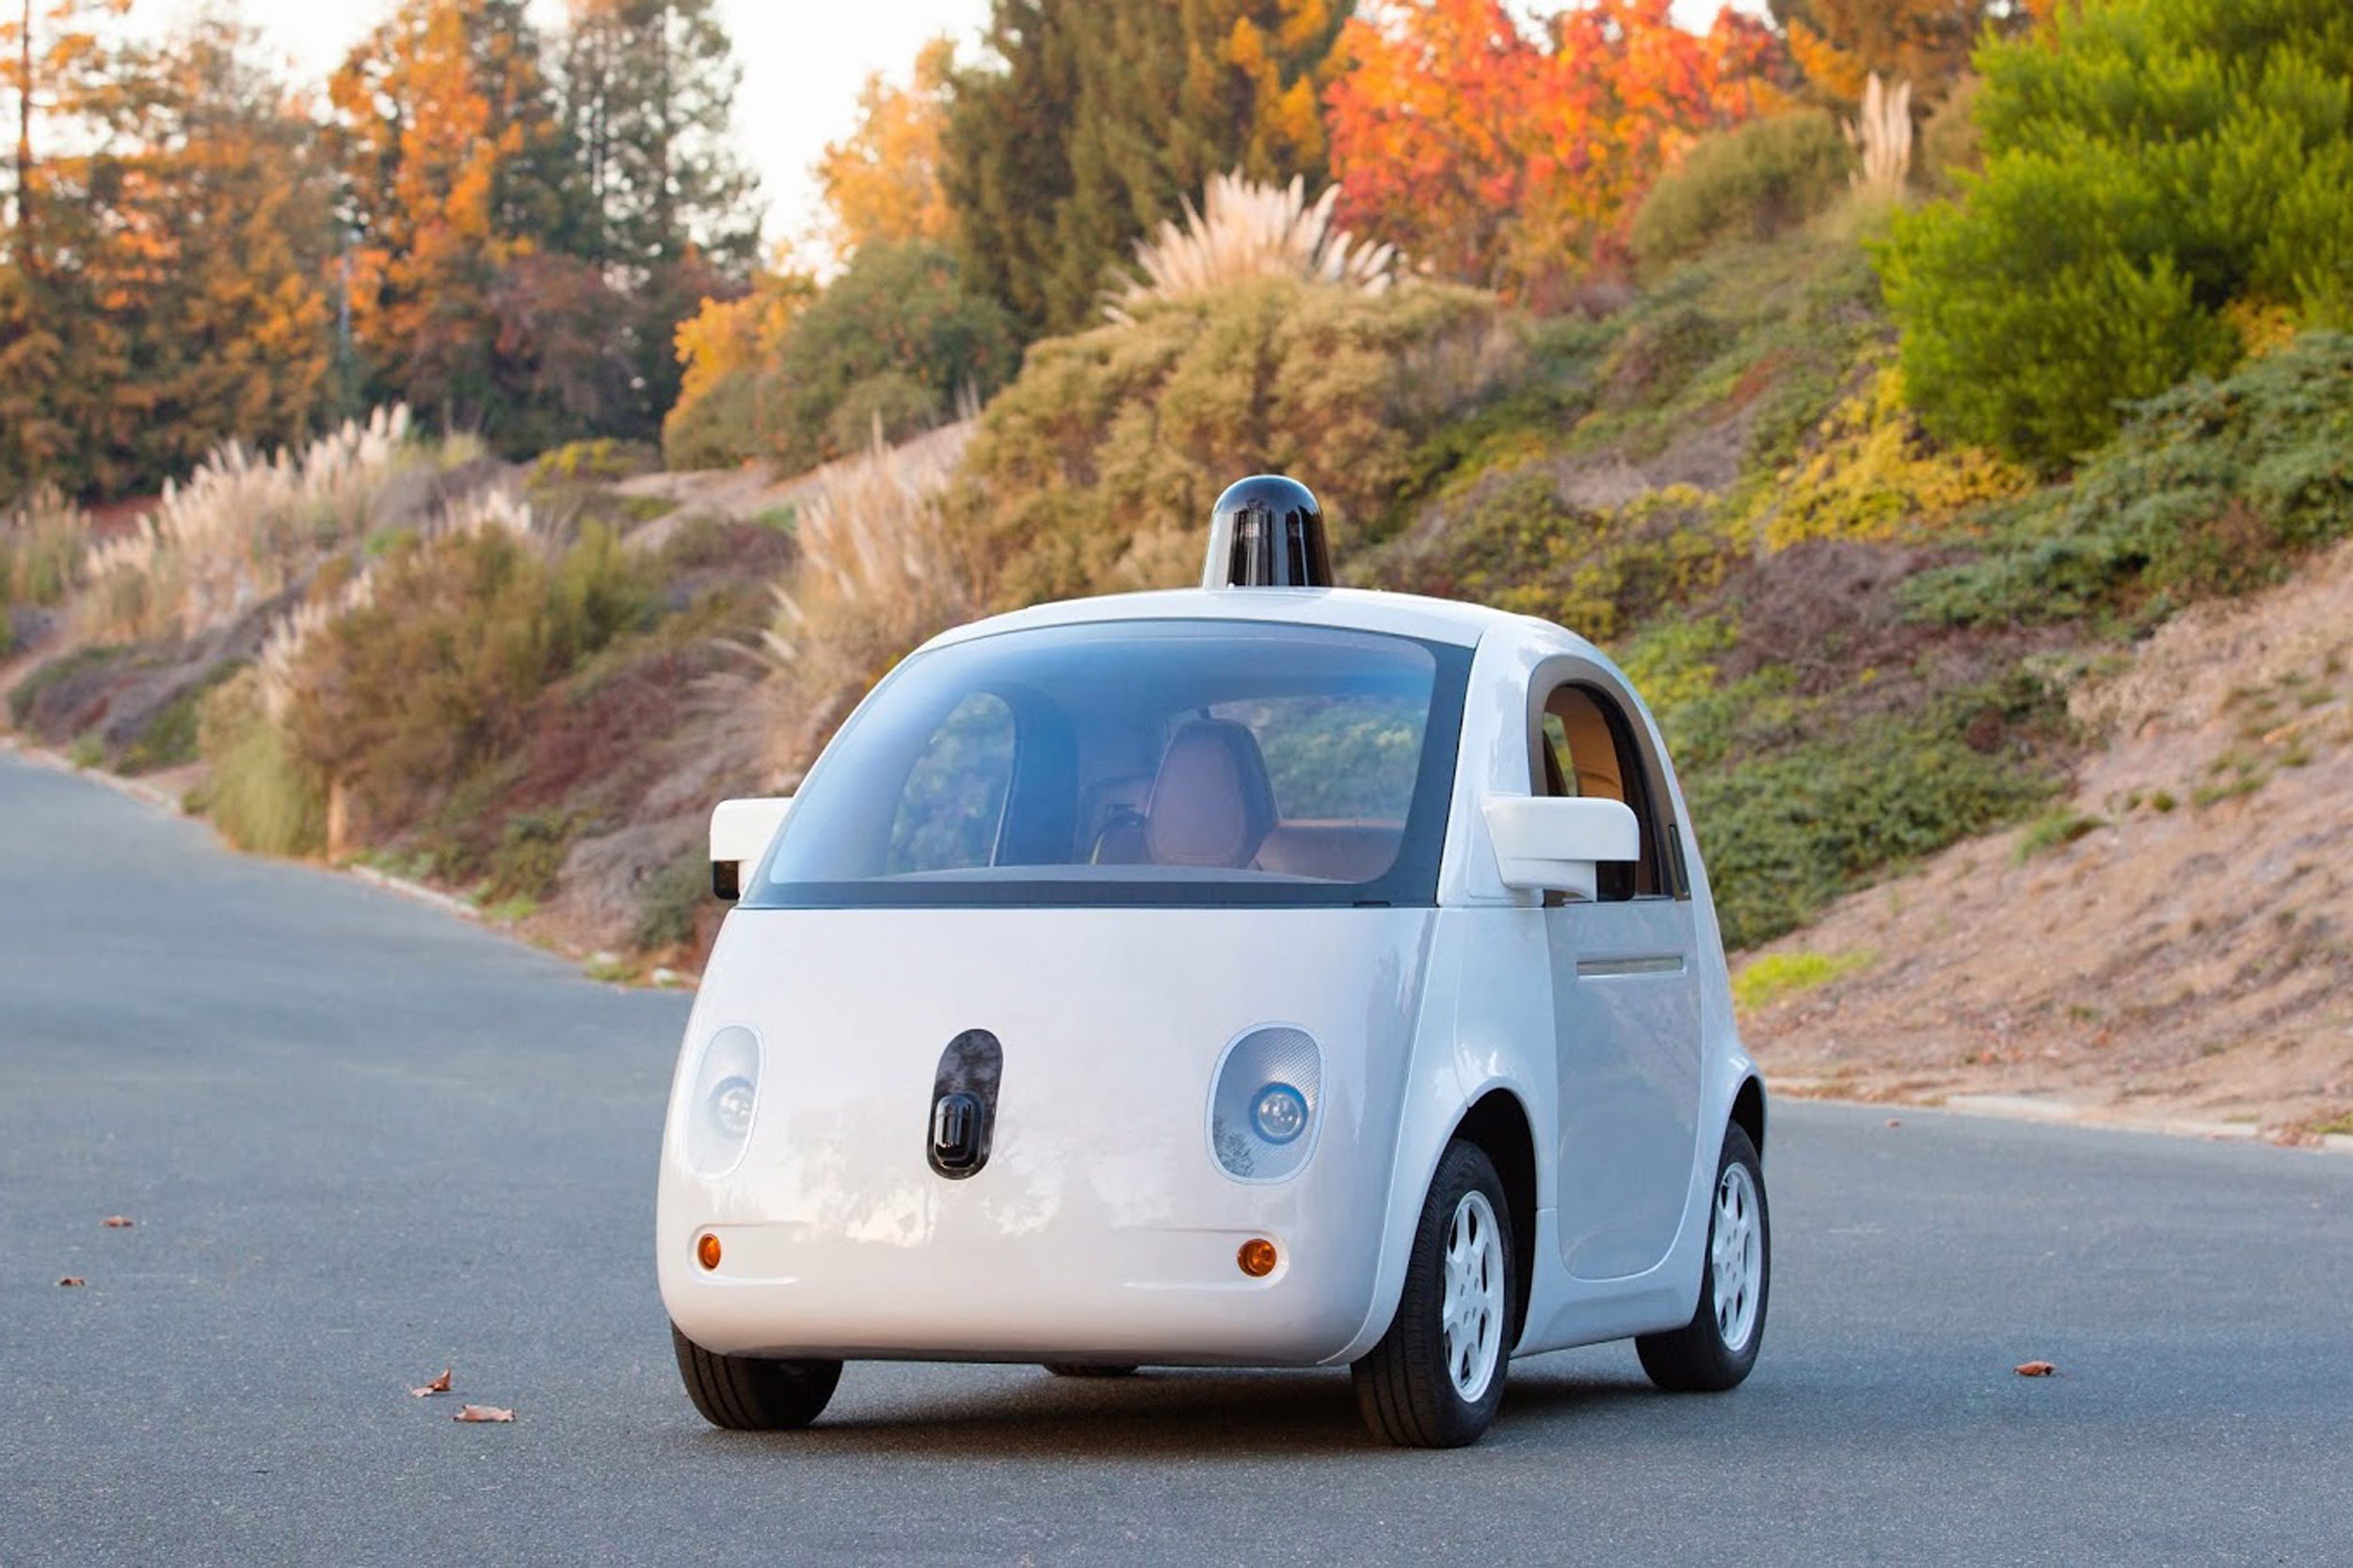 Google ujawaniło swój samochód. Będzie jeździć bez